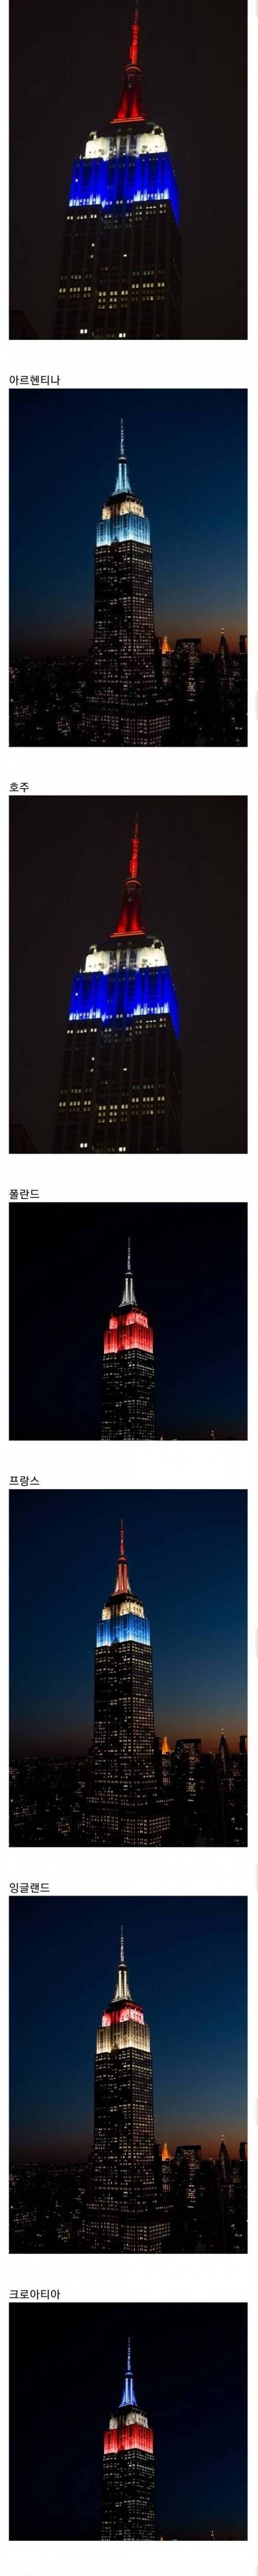 뉴욕 엠파이어 스테이트 빌딩 월드컵 16강 진출 국가 축하 조명...jpg